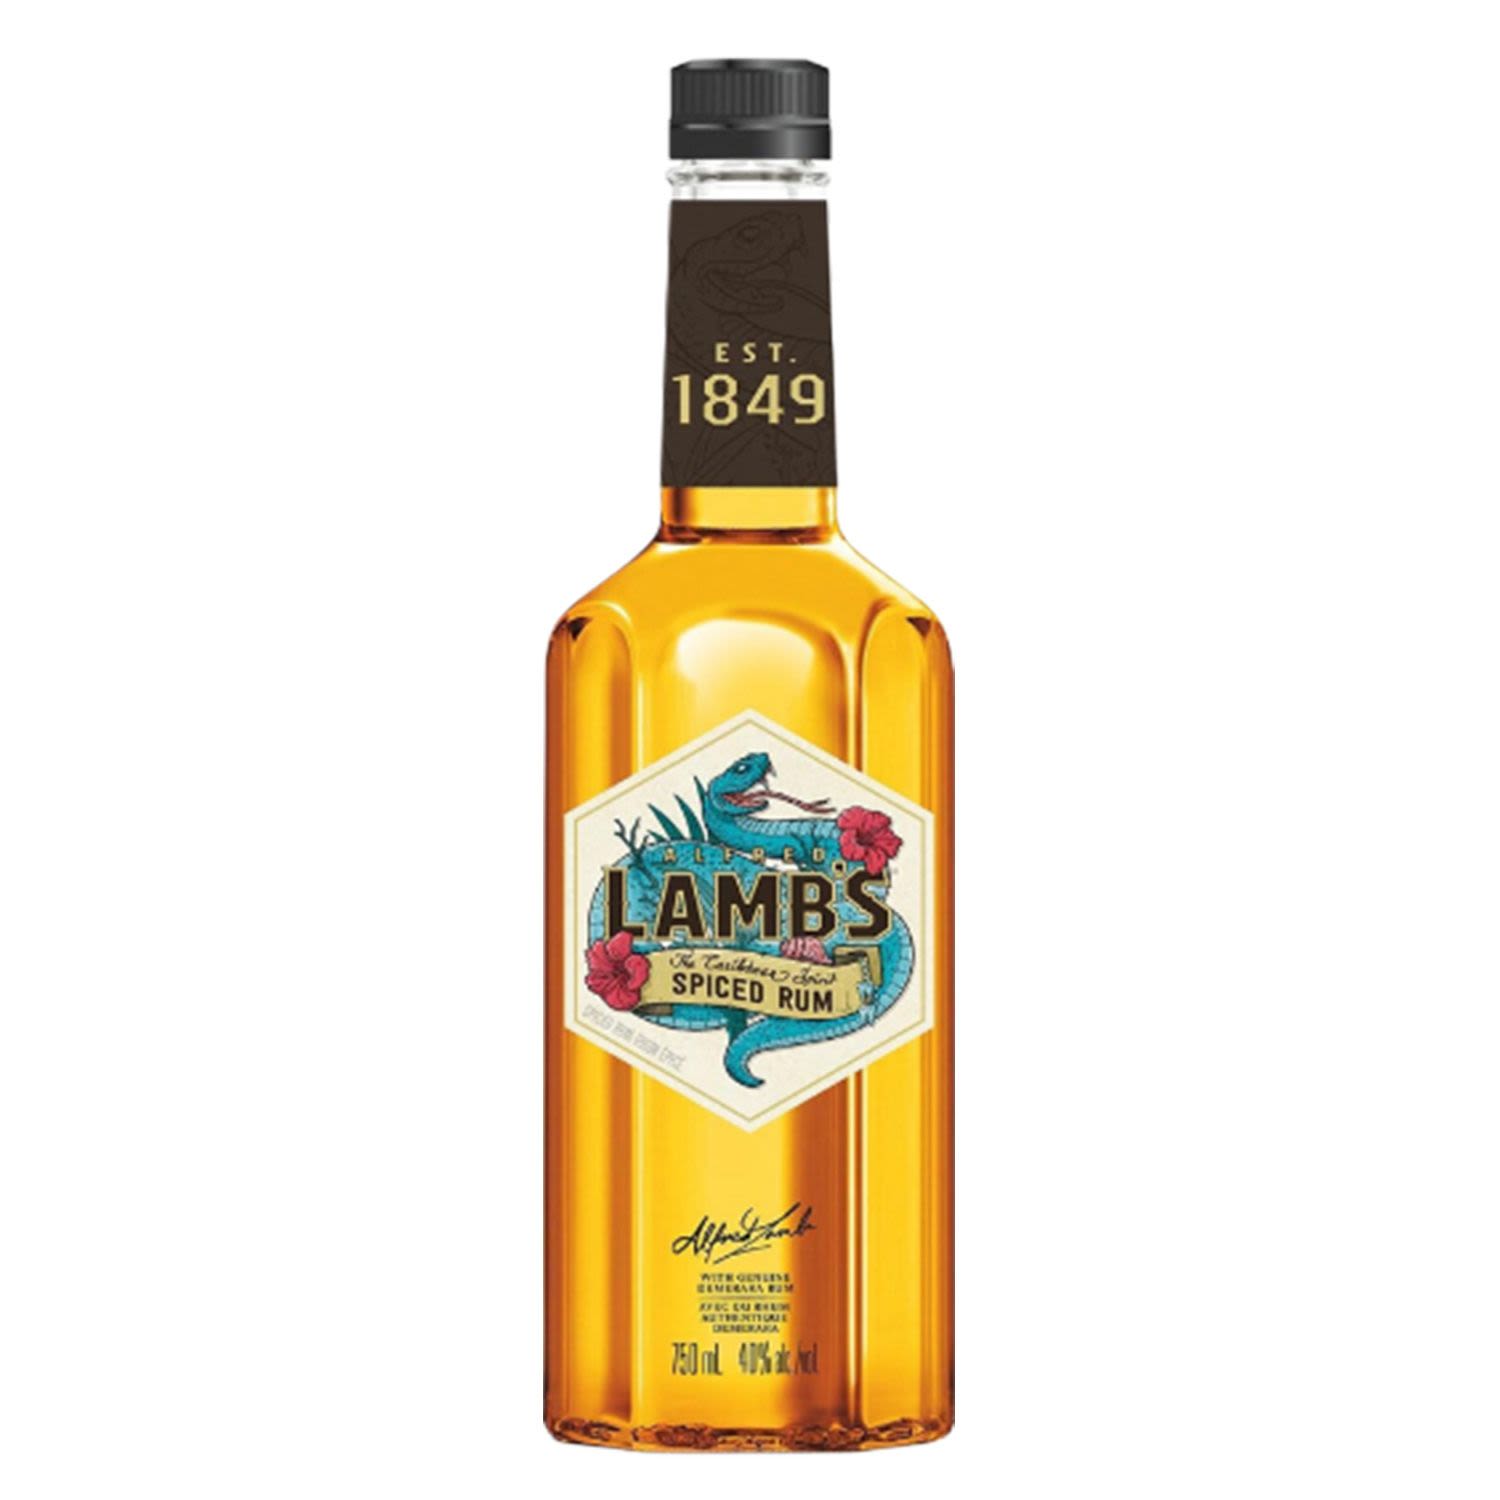 Lamb's Spiced Rum 700mL Bottle